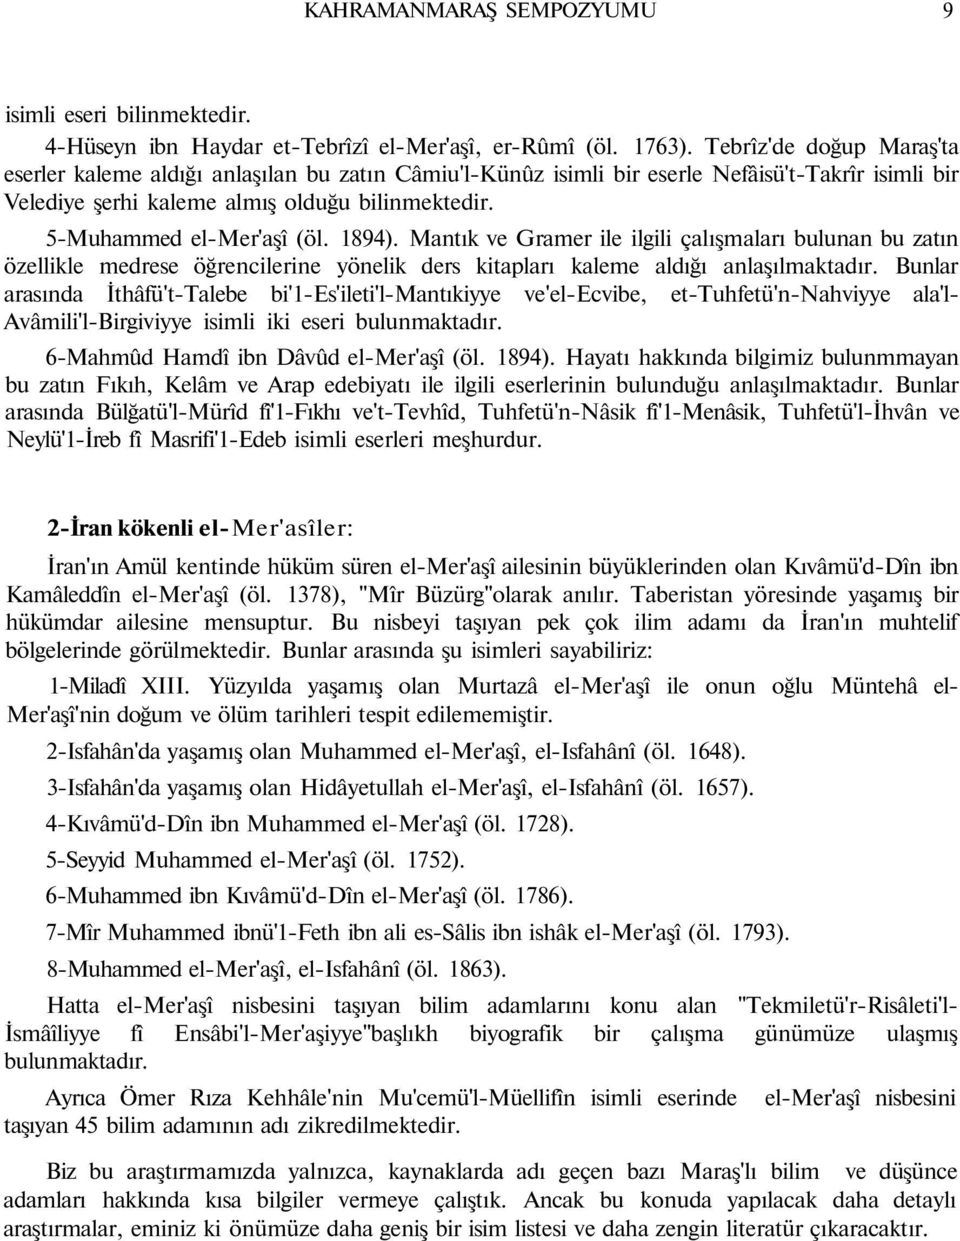 5-Muhammed el-mer'aşî (öl. 1894). Mantık ve Gramer ile ilgili çalışmaları bulunan bu zatın özellikle medrese öğrencilerine yönelik ders kitapları kaleme aldığı anlaşılmaktadır.